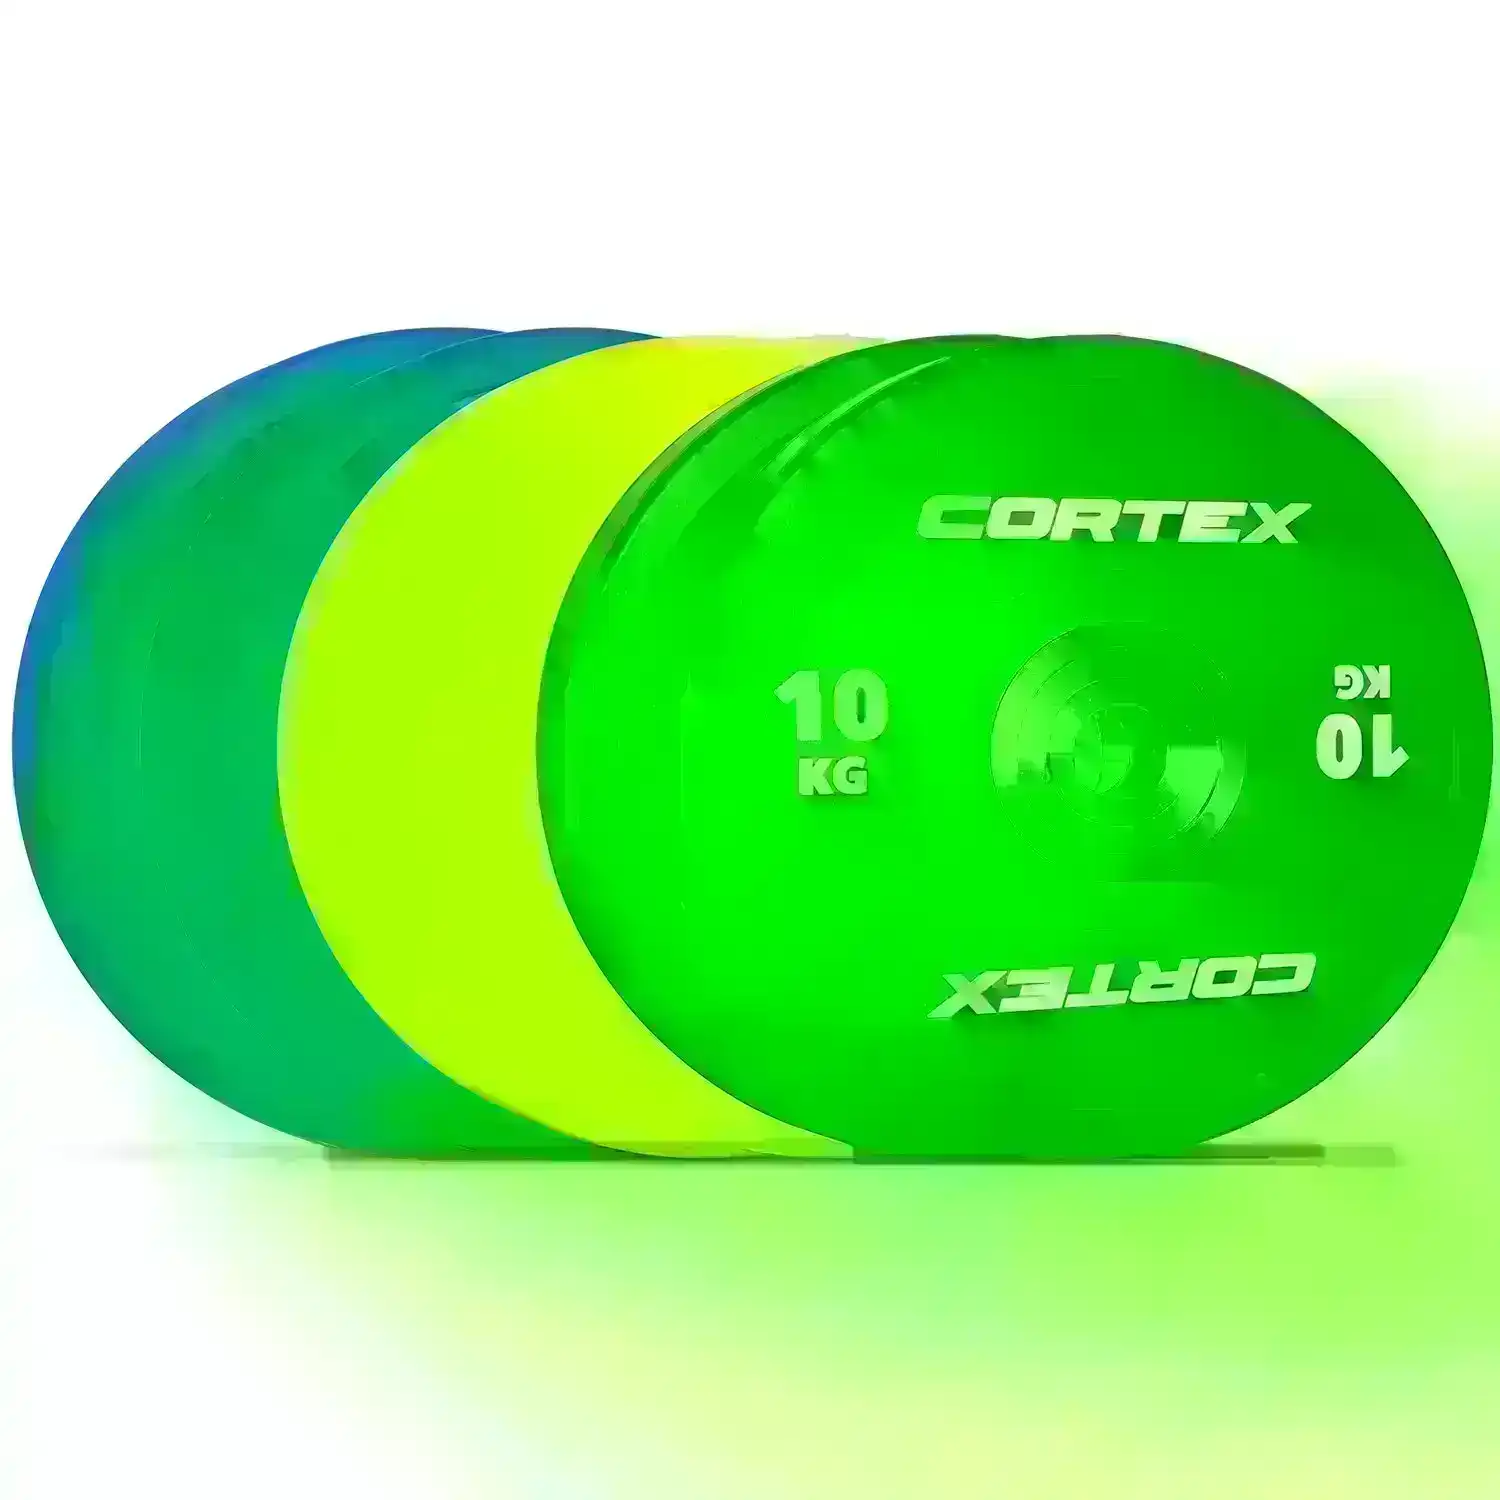 Cortex 90kg Competition Bumper Plates Set